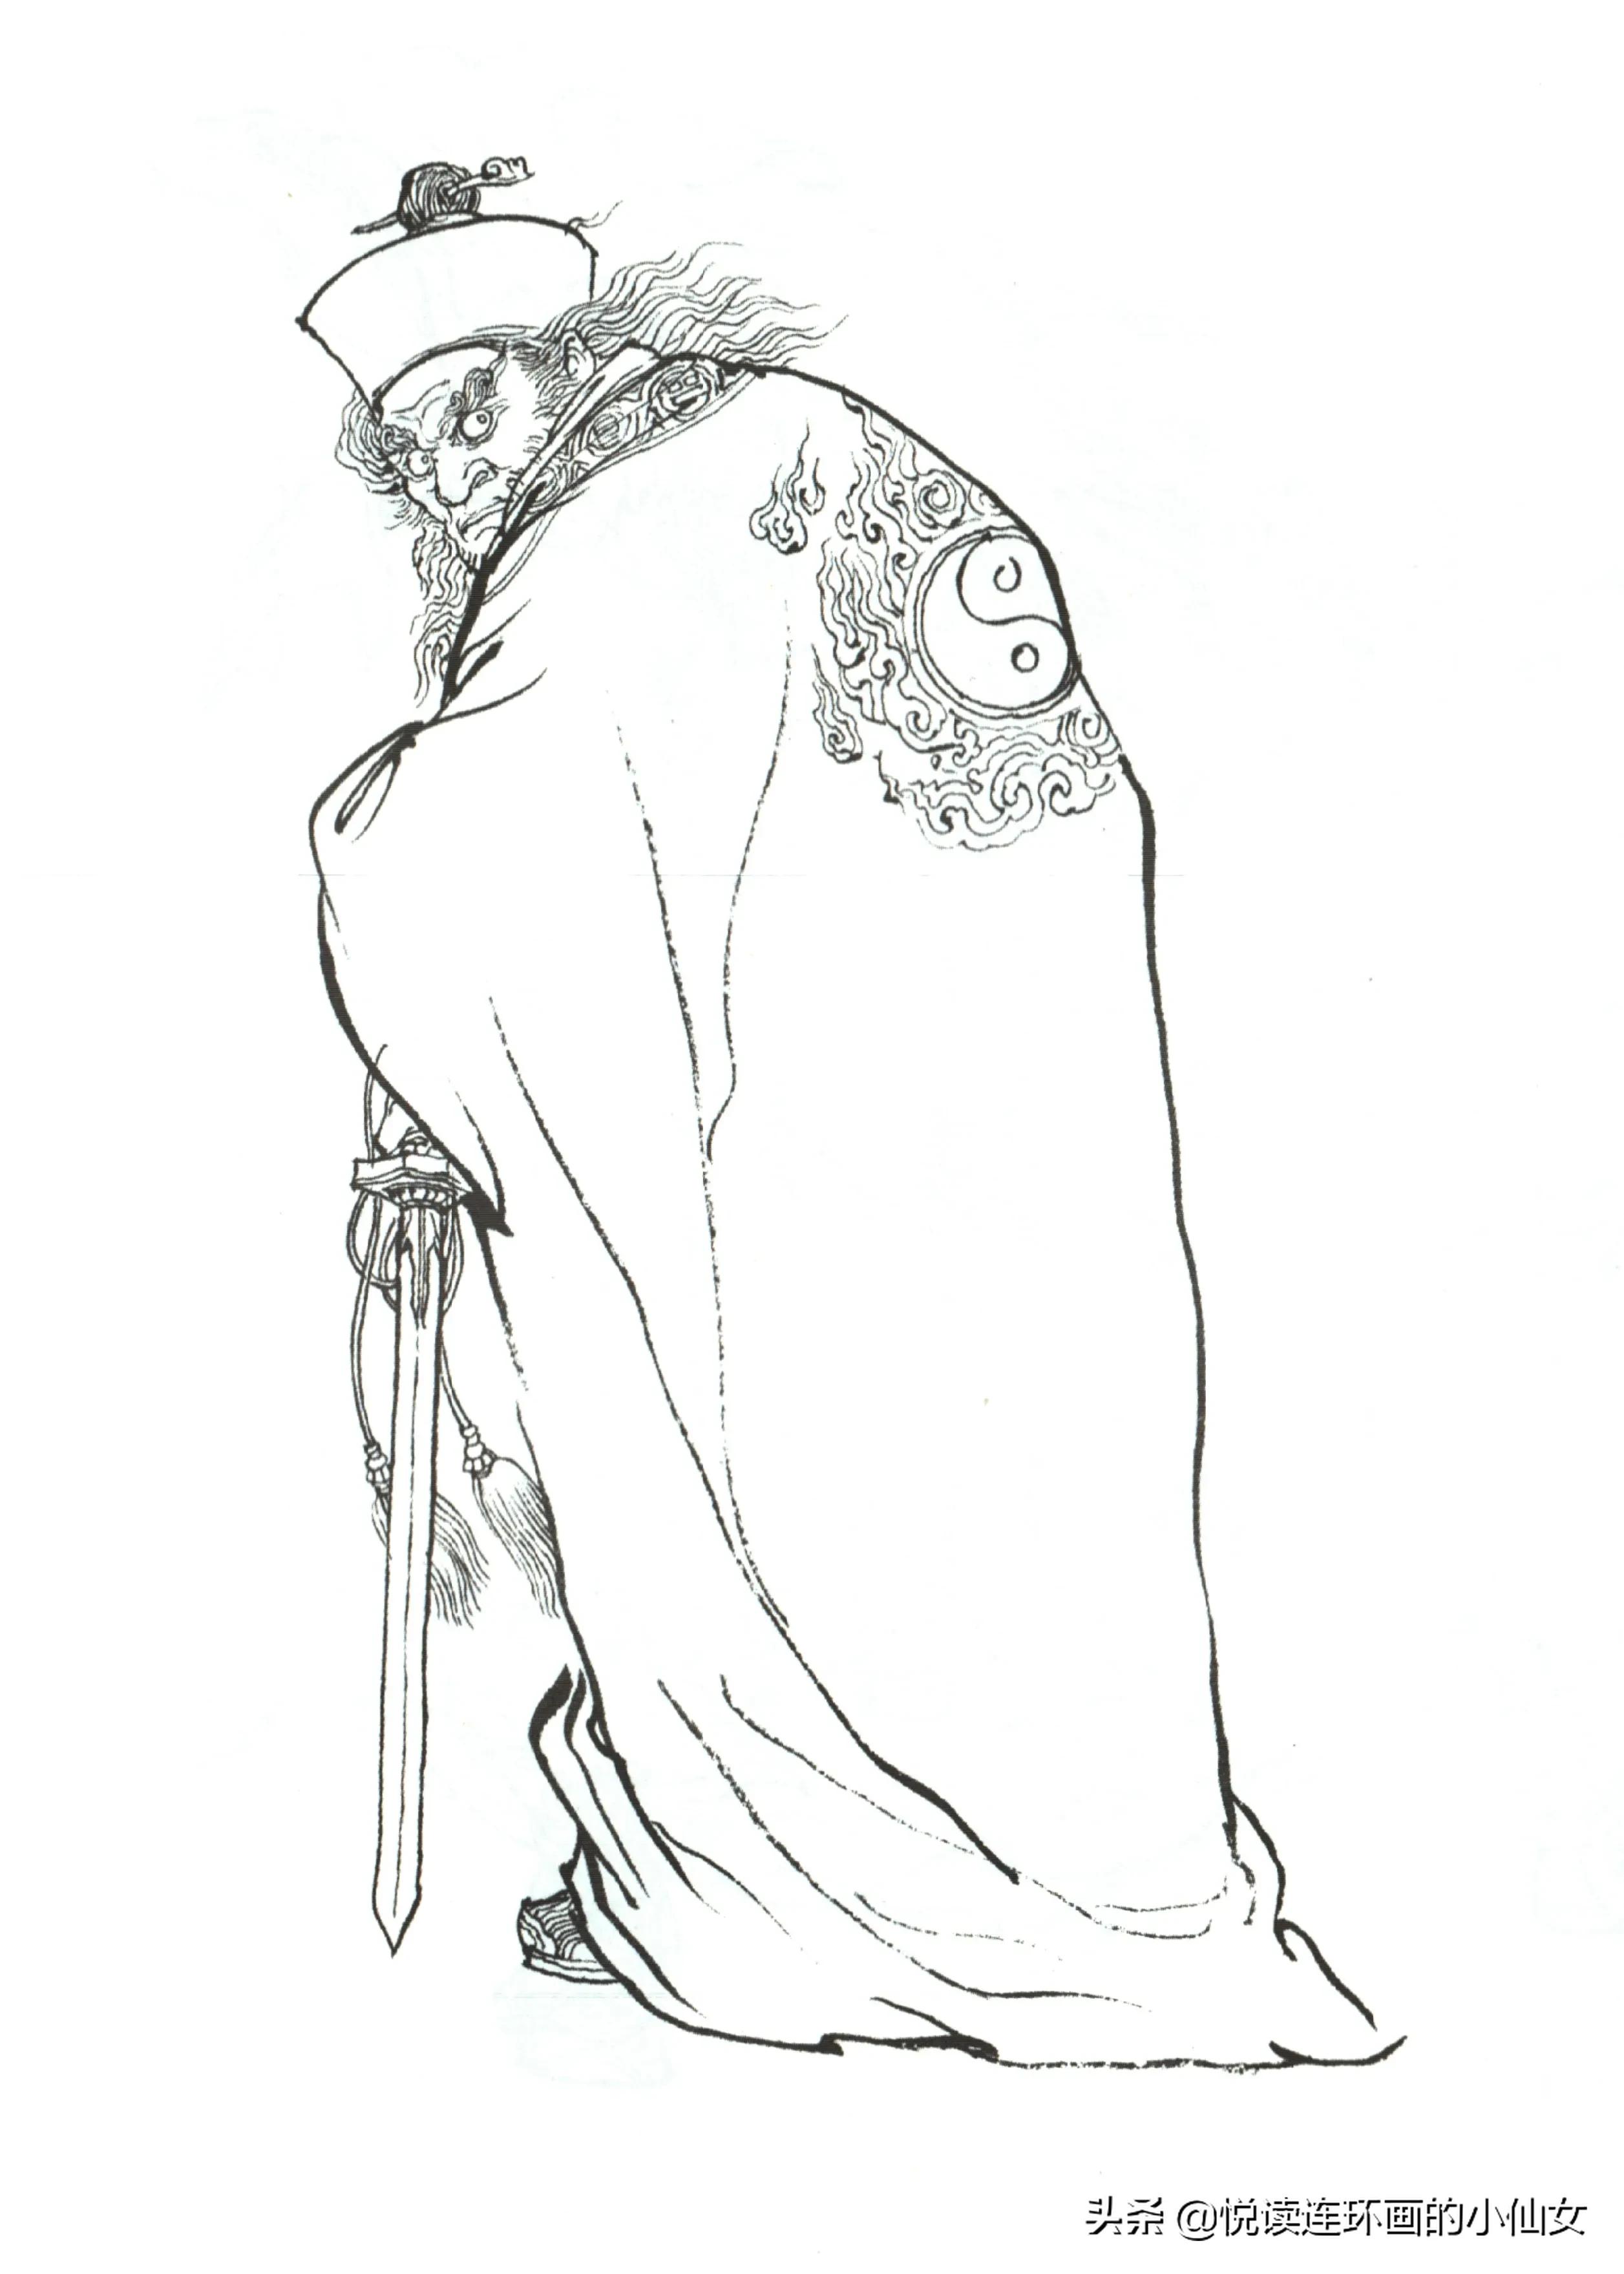 西游记神魔人物画谱，李云中绘插图(148)